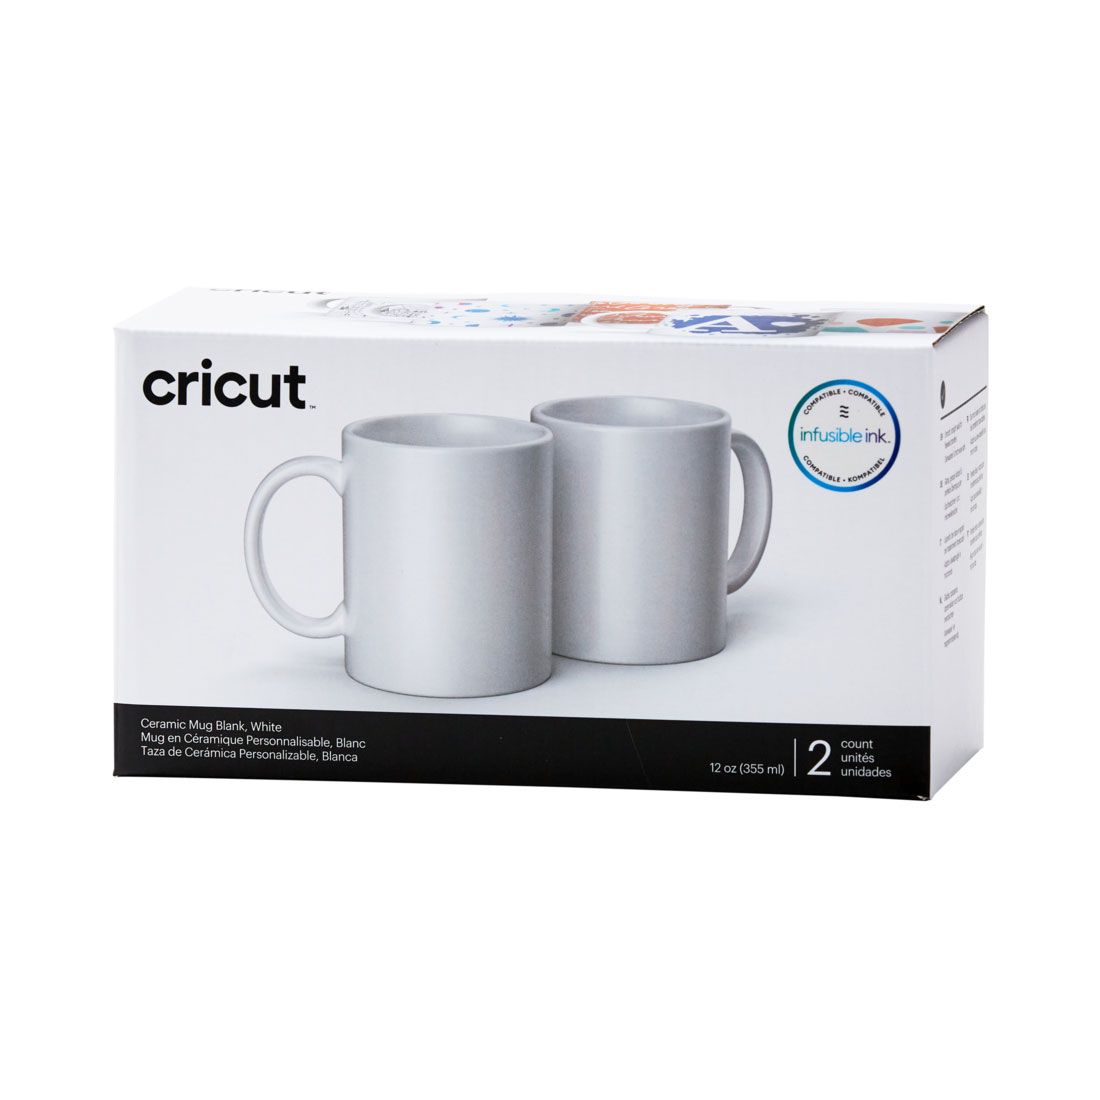 CRICUT Ceramic Mug Blank - White 12 oz/340 ml x 2 pcs (2007821)